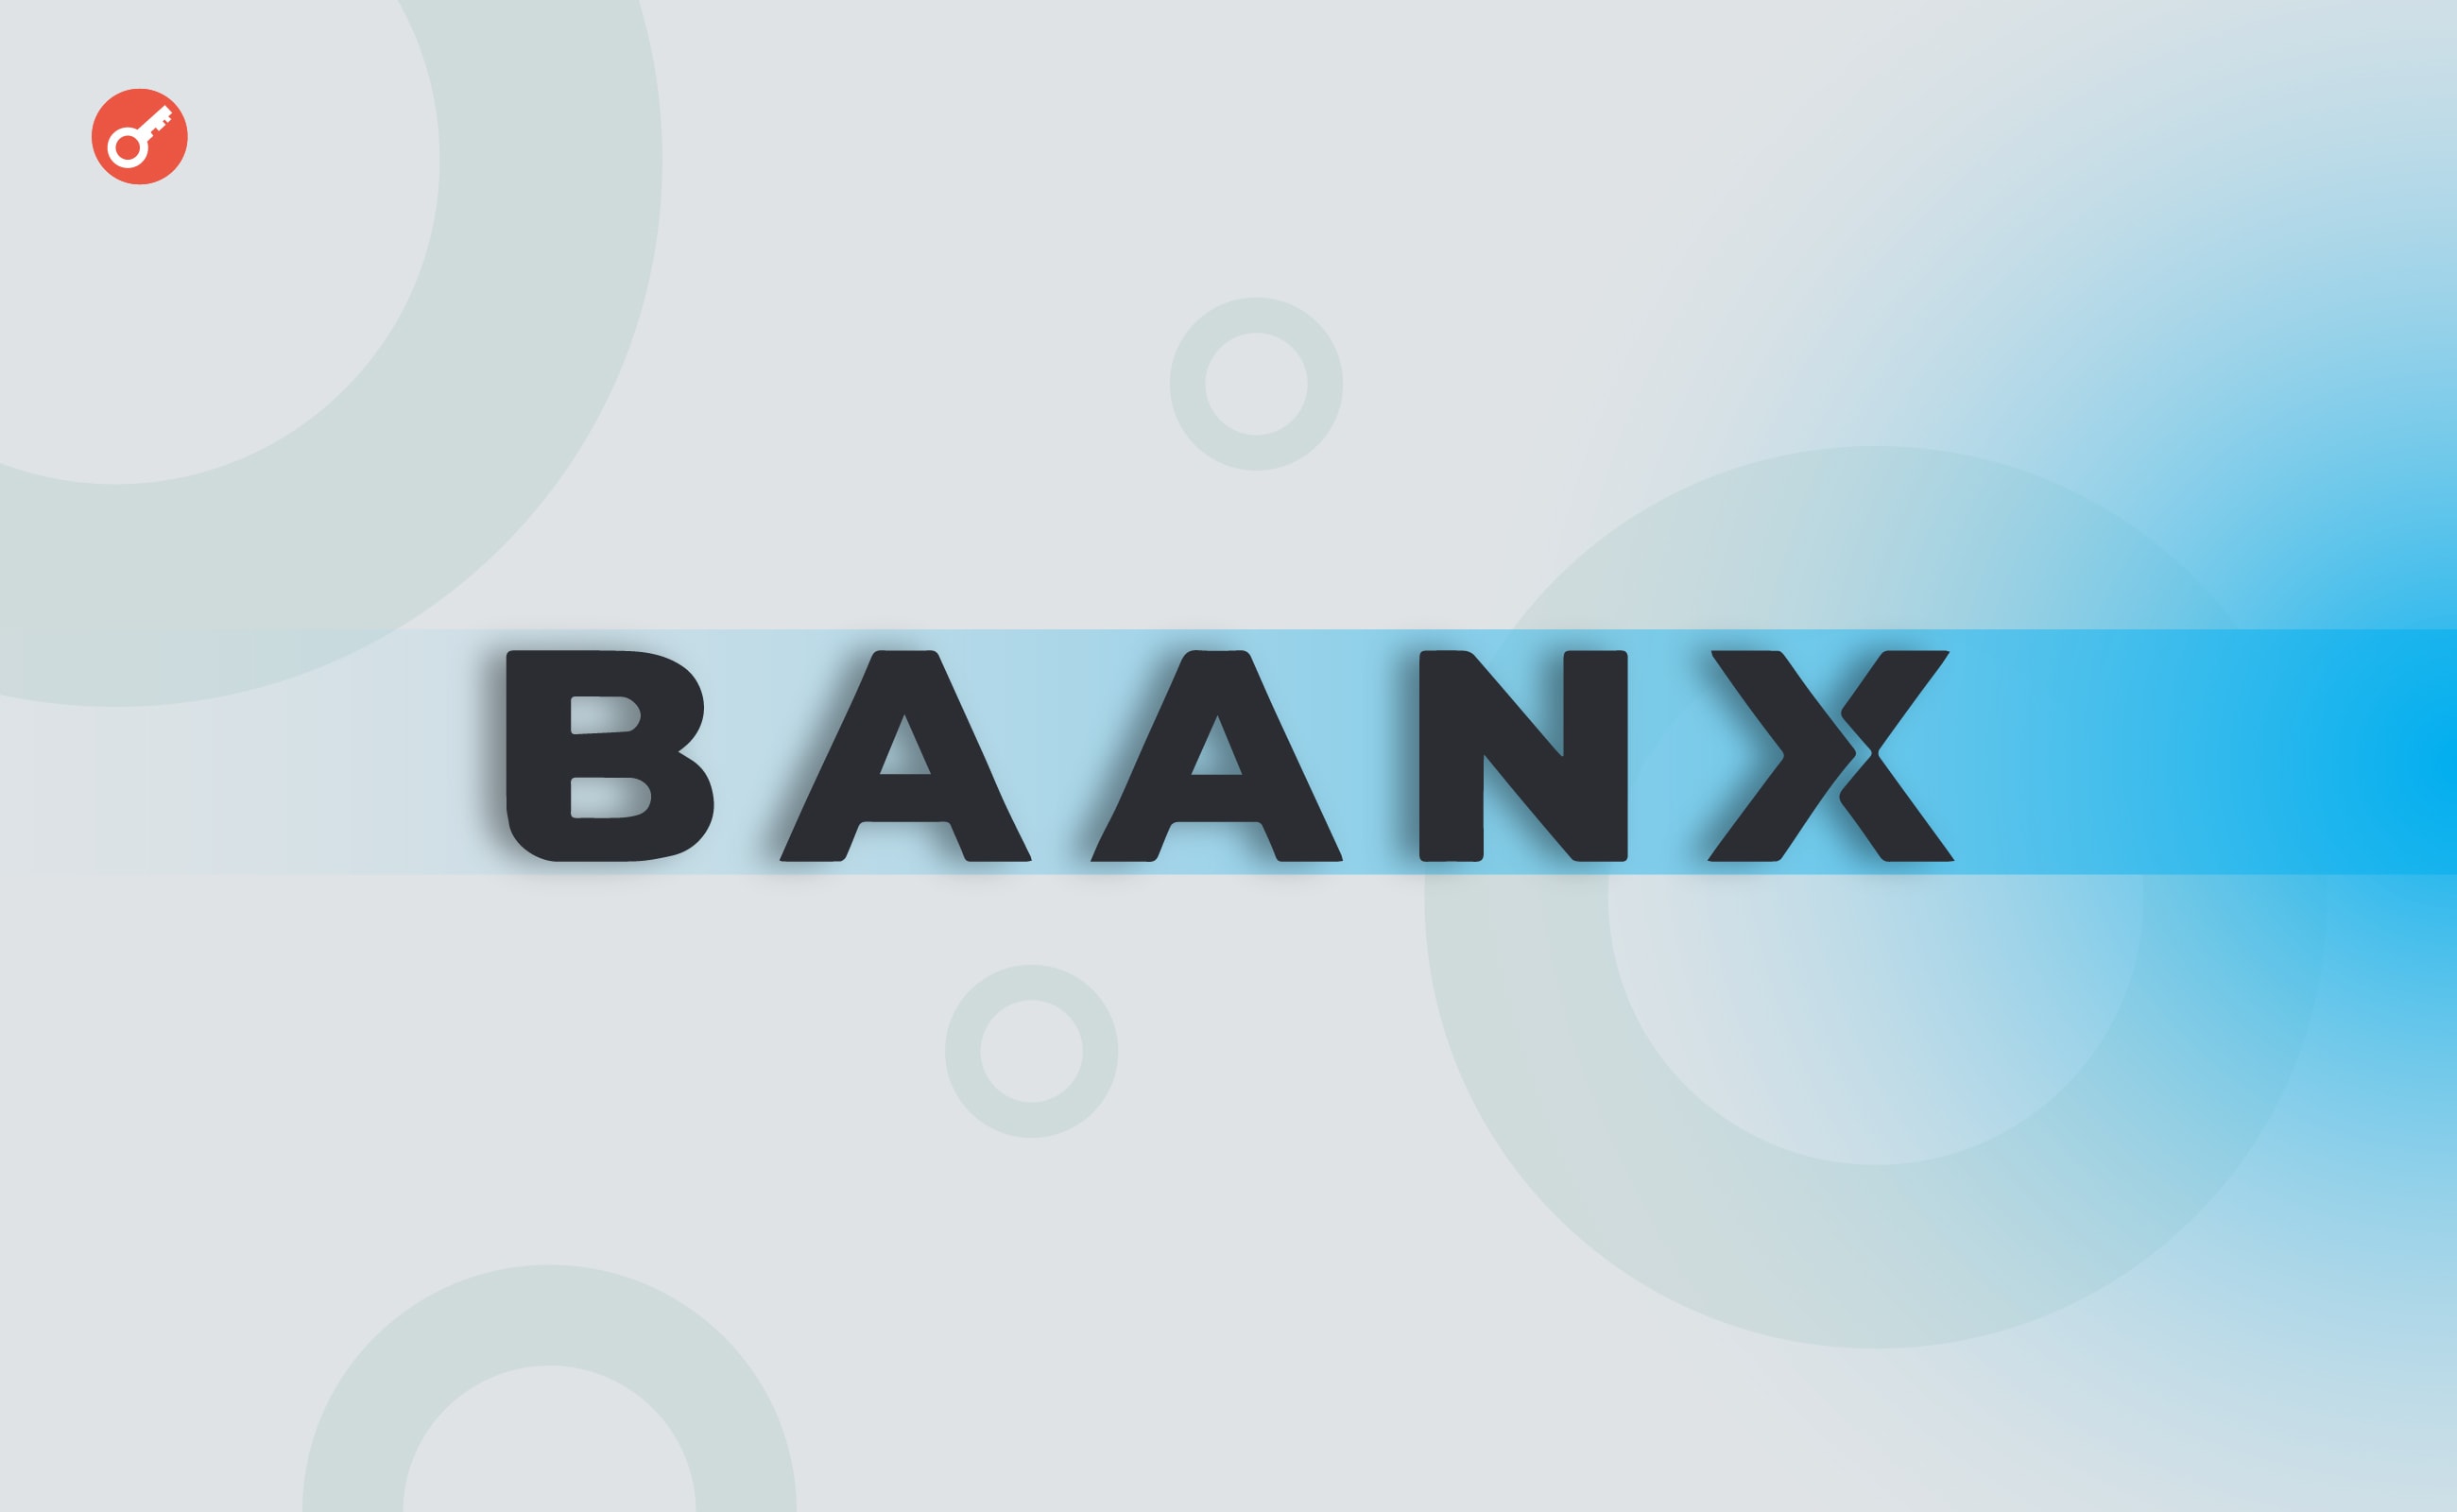 Платформа Baanx залучила $20 млн інвестицій за участю Ledger і Tezos. Головний колаж новини.